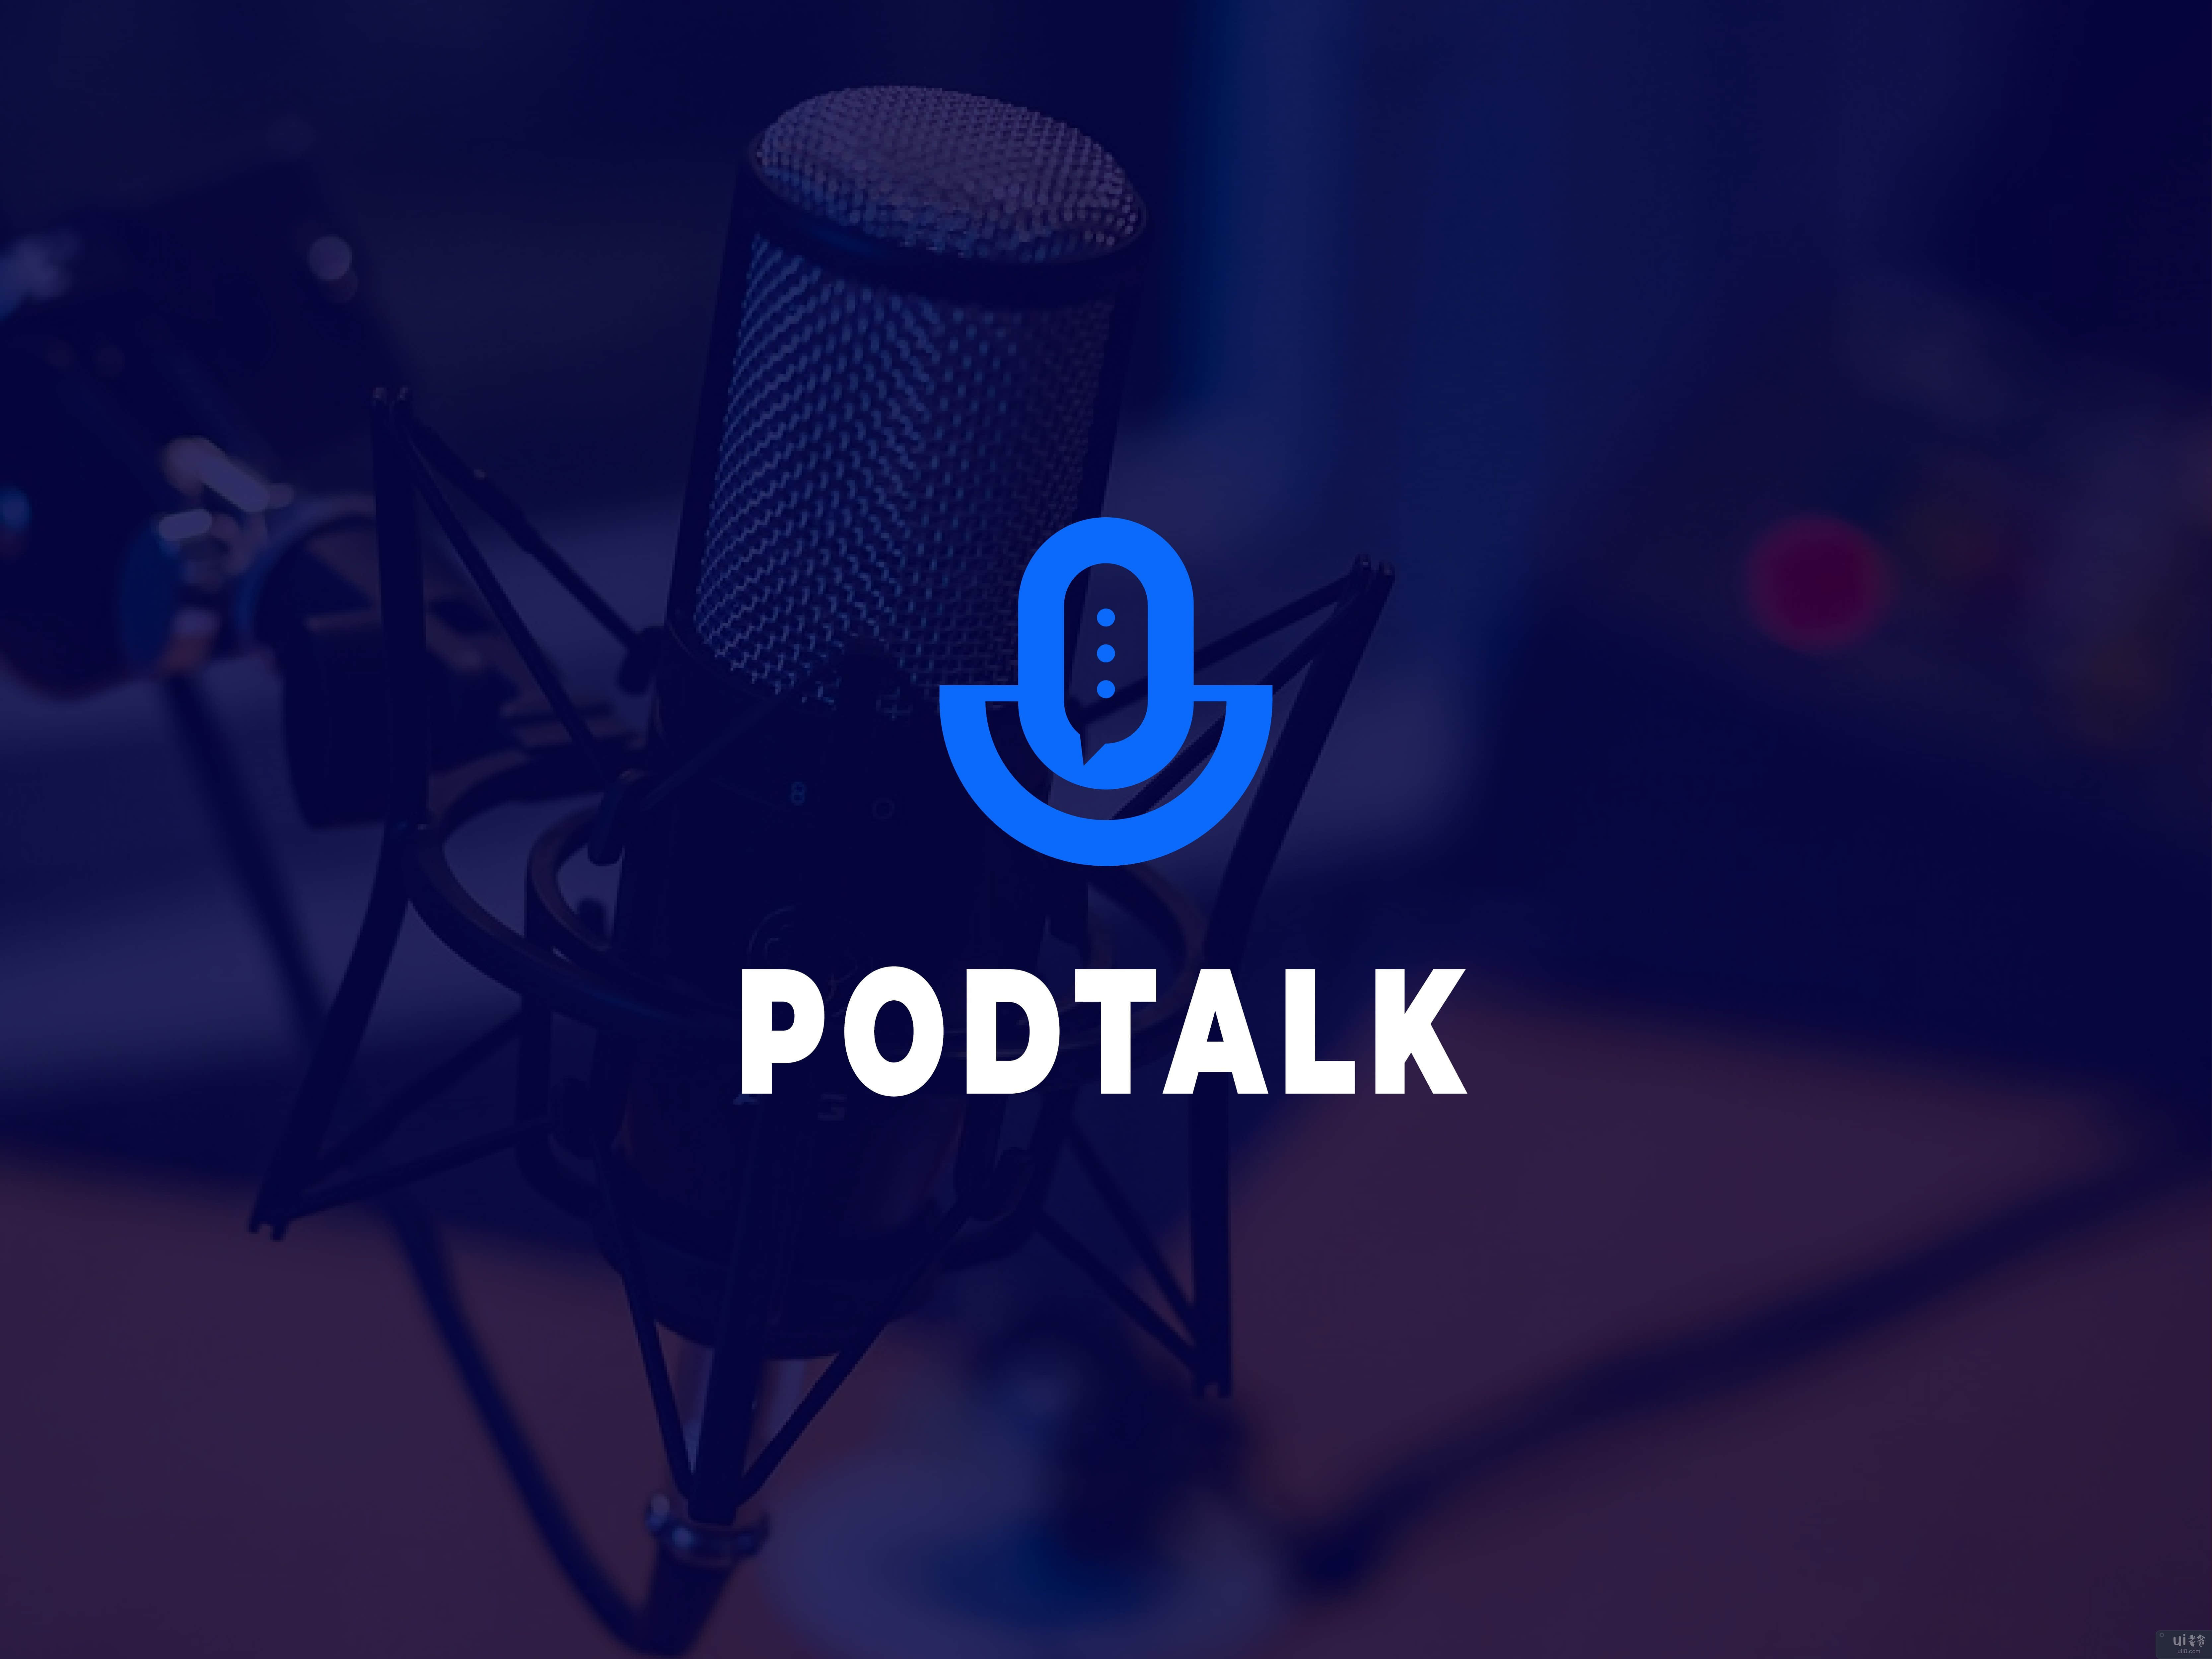 播客徽标，播客徽标(podtalk logo, podcast logo)插图